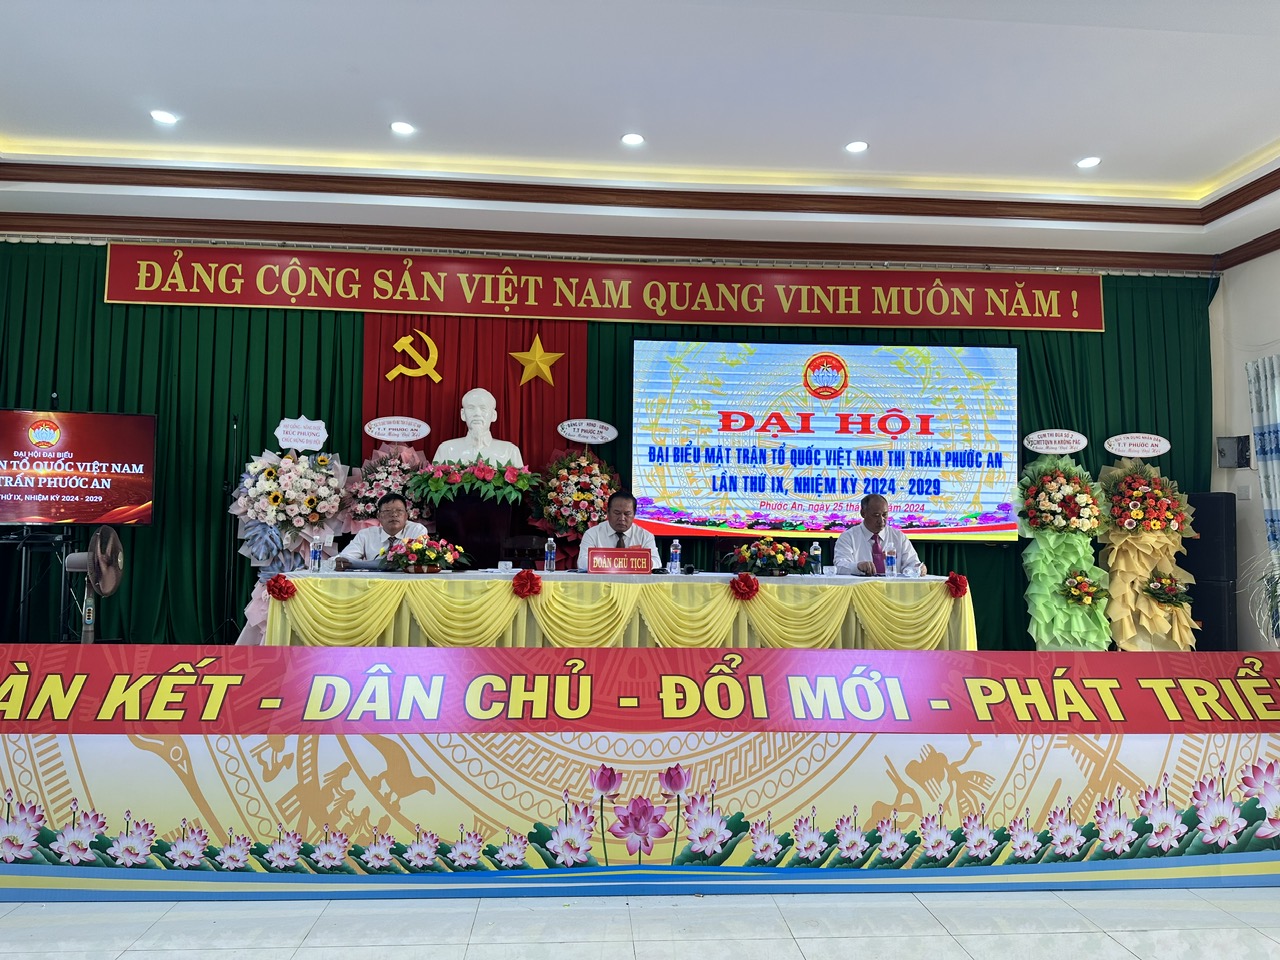  Ủy ban Mặt trận Tổ quốc Việt Nam thị trấn Phước An tổ chức Đại hội đại biểu MTTQ thị trấn Phước An lần thứ IX nhiệm kỳ 2024-2029. 